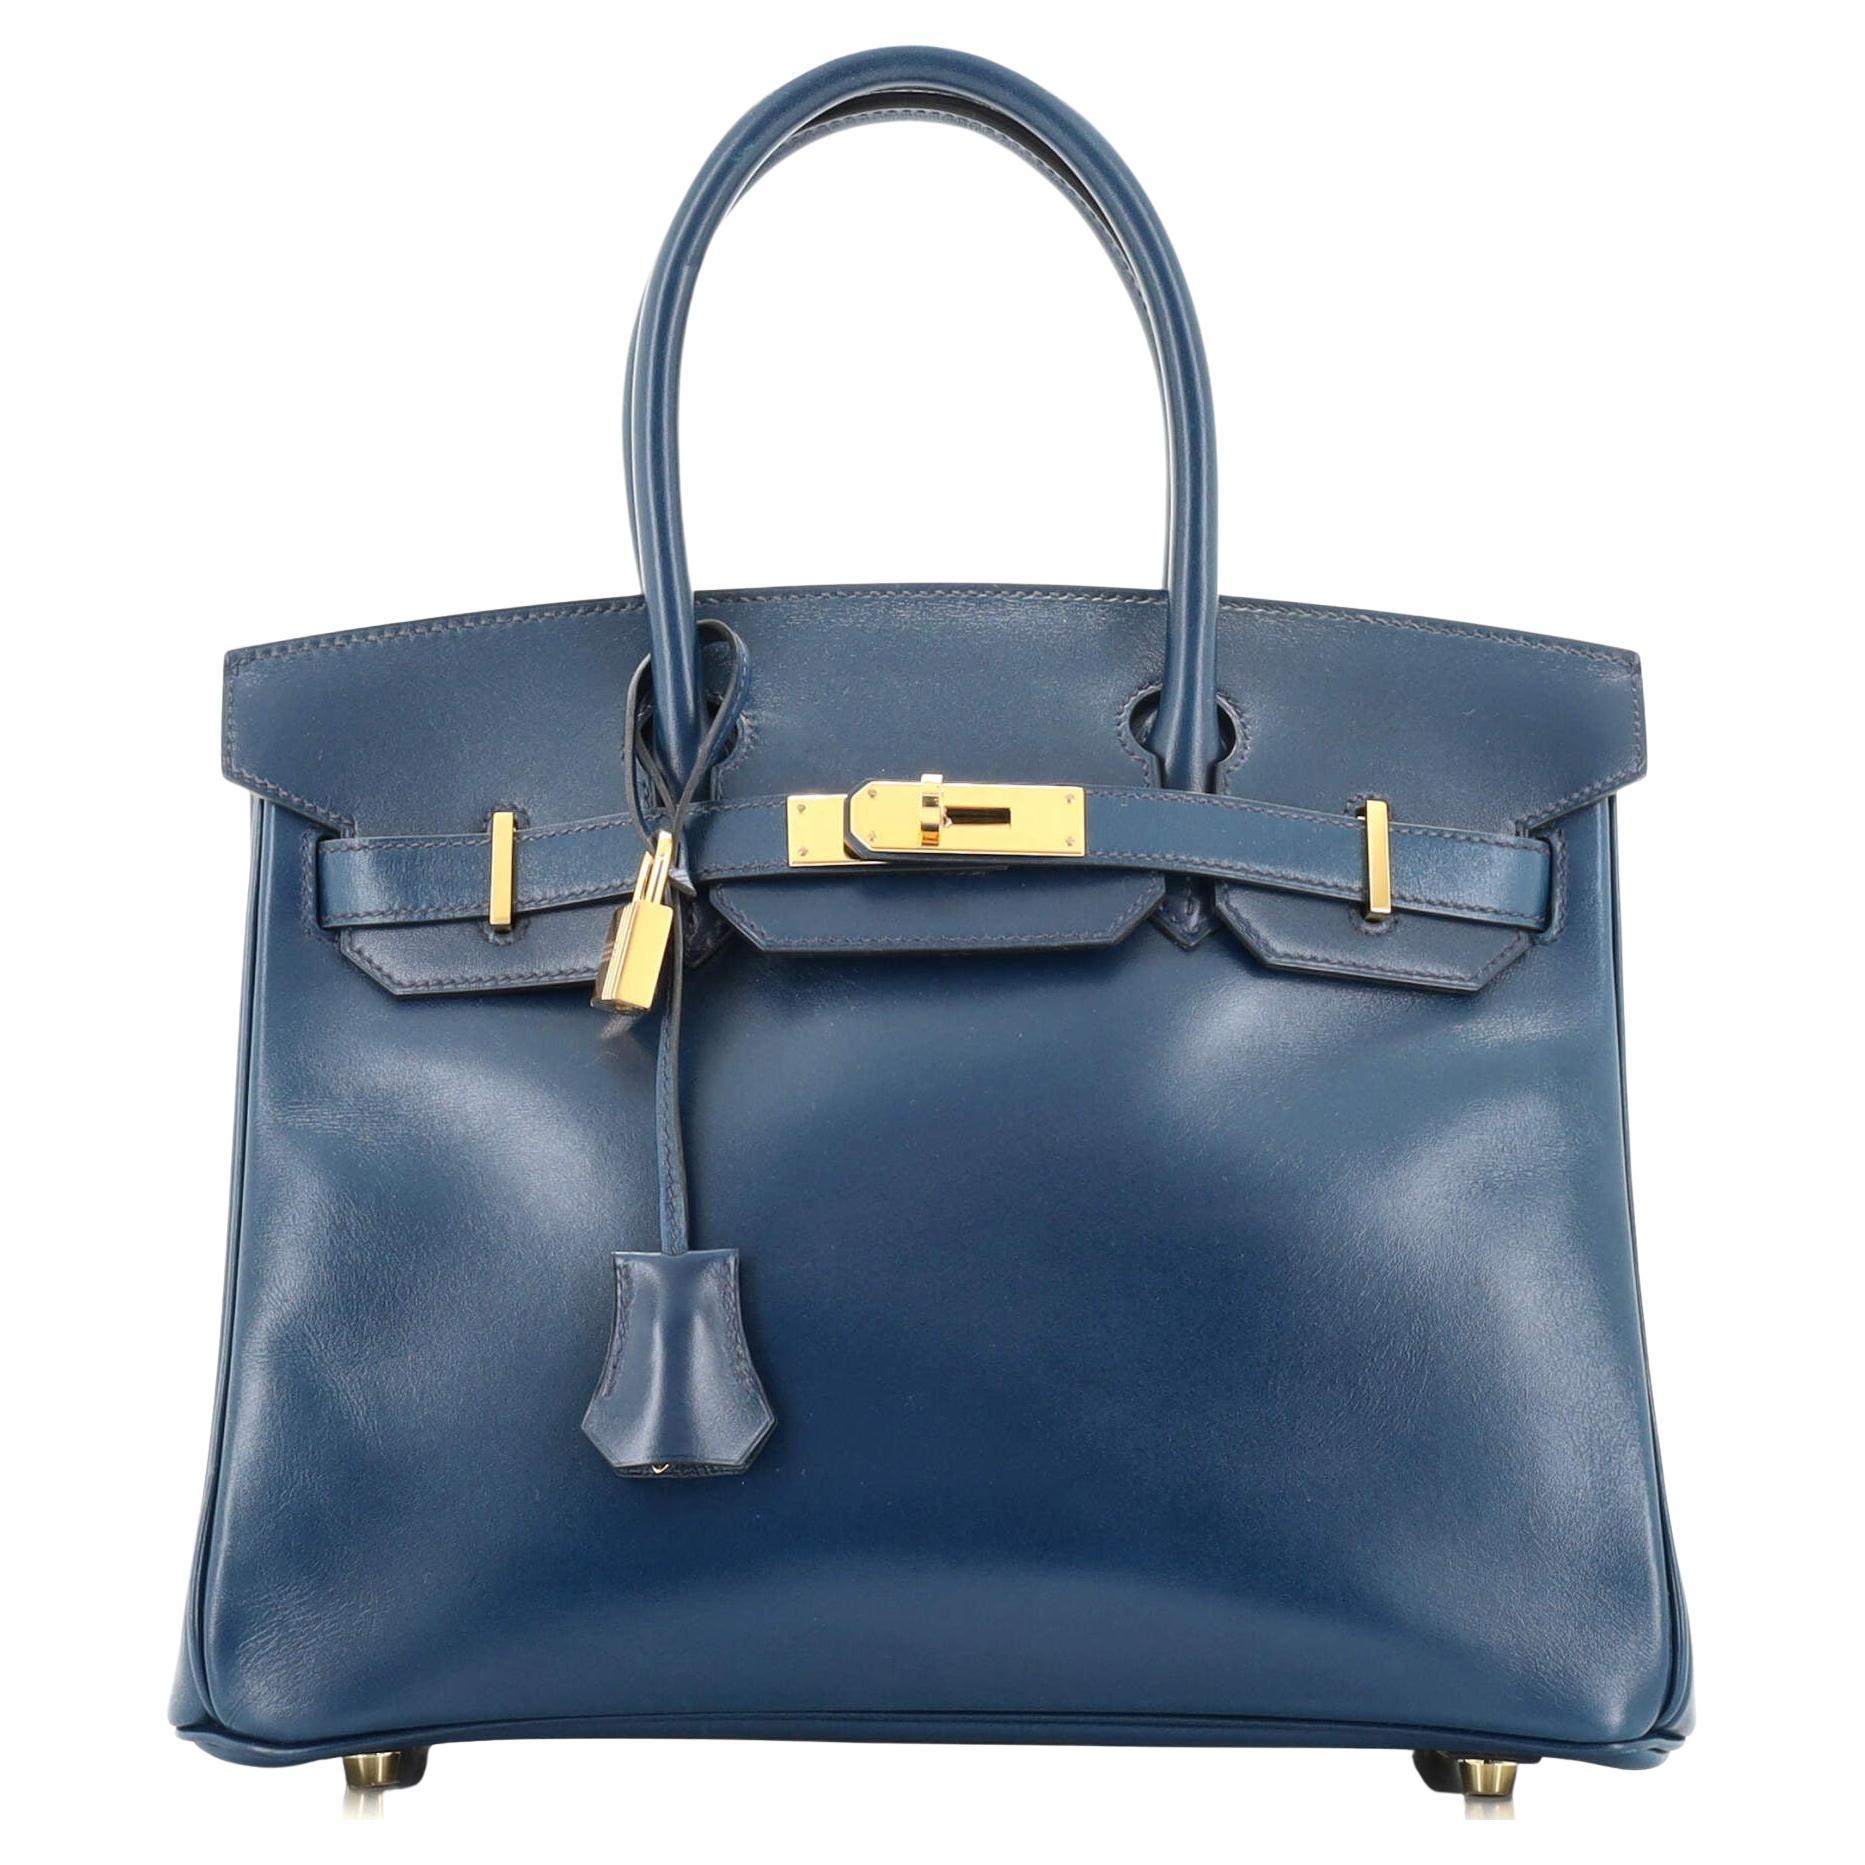 Hermes Birkin Handbag Bleu De Prusse Tadelakt with Gold Hardware 30